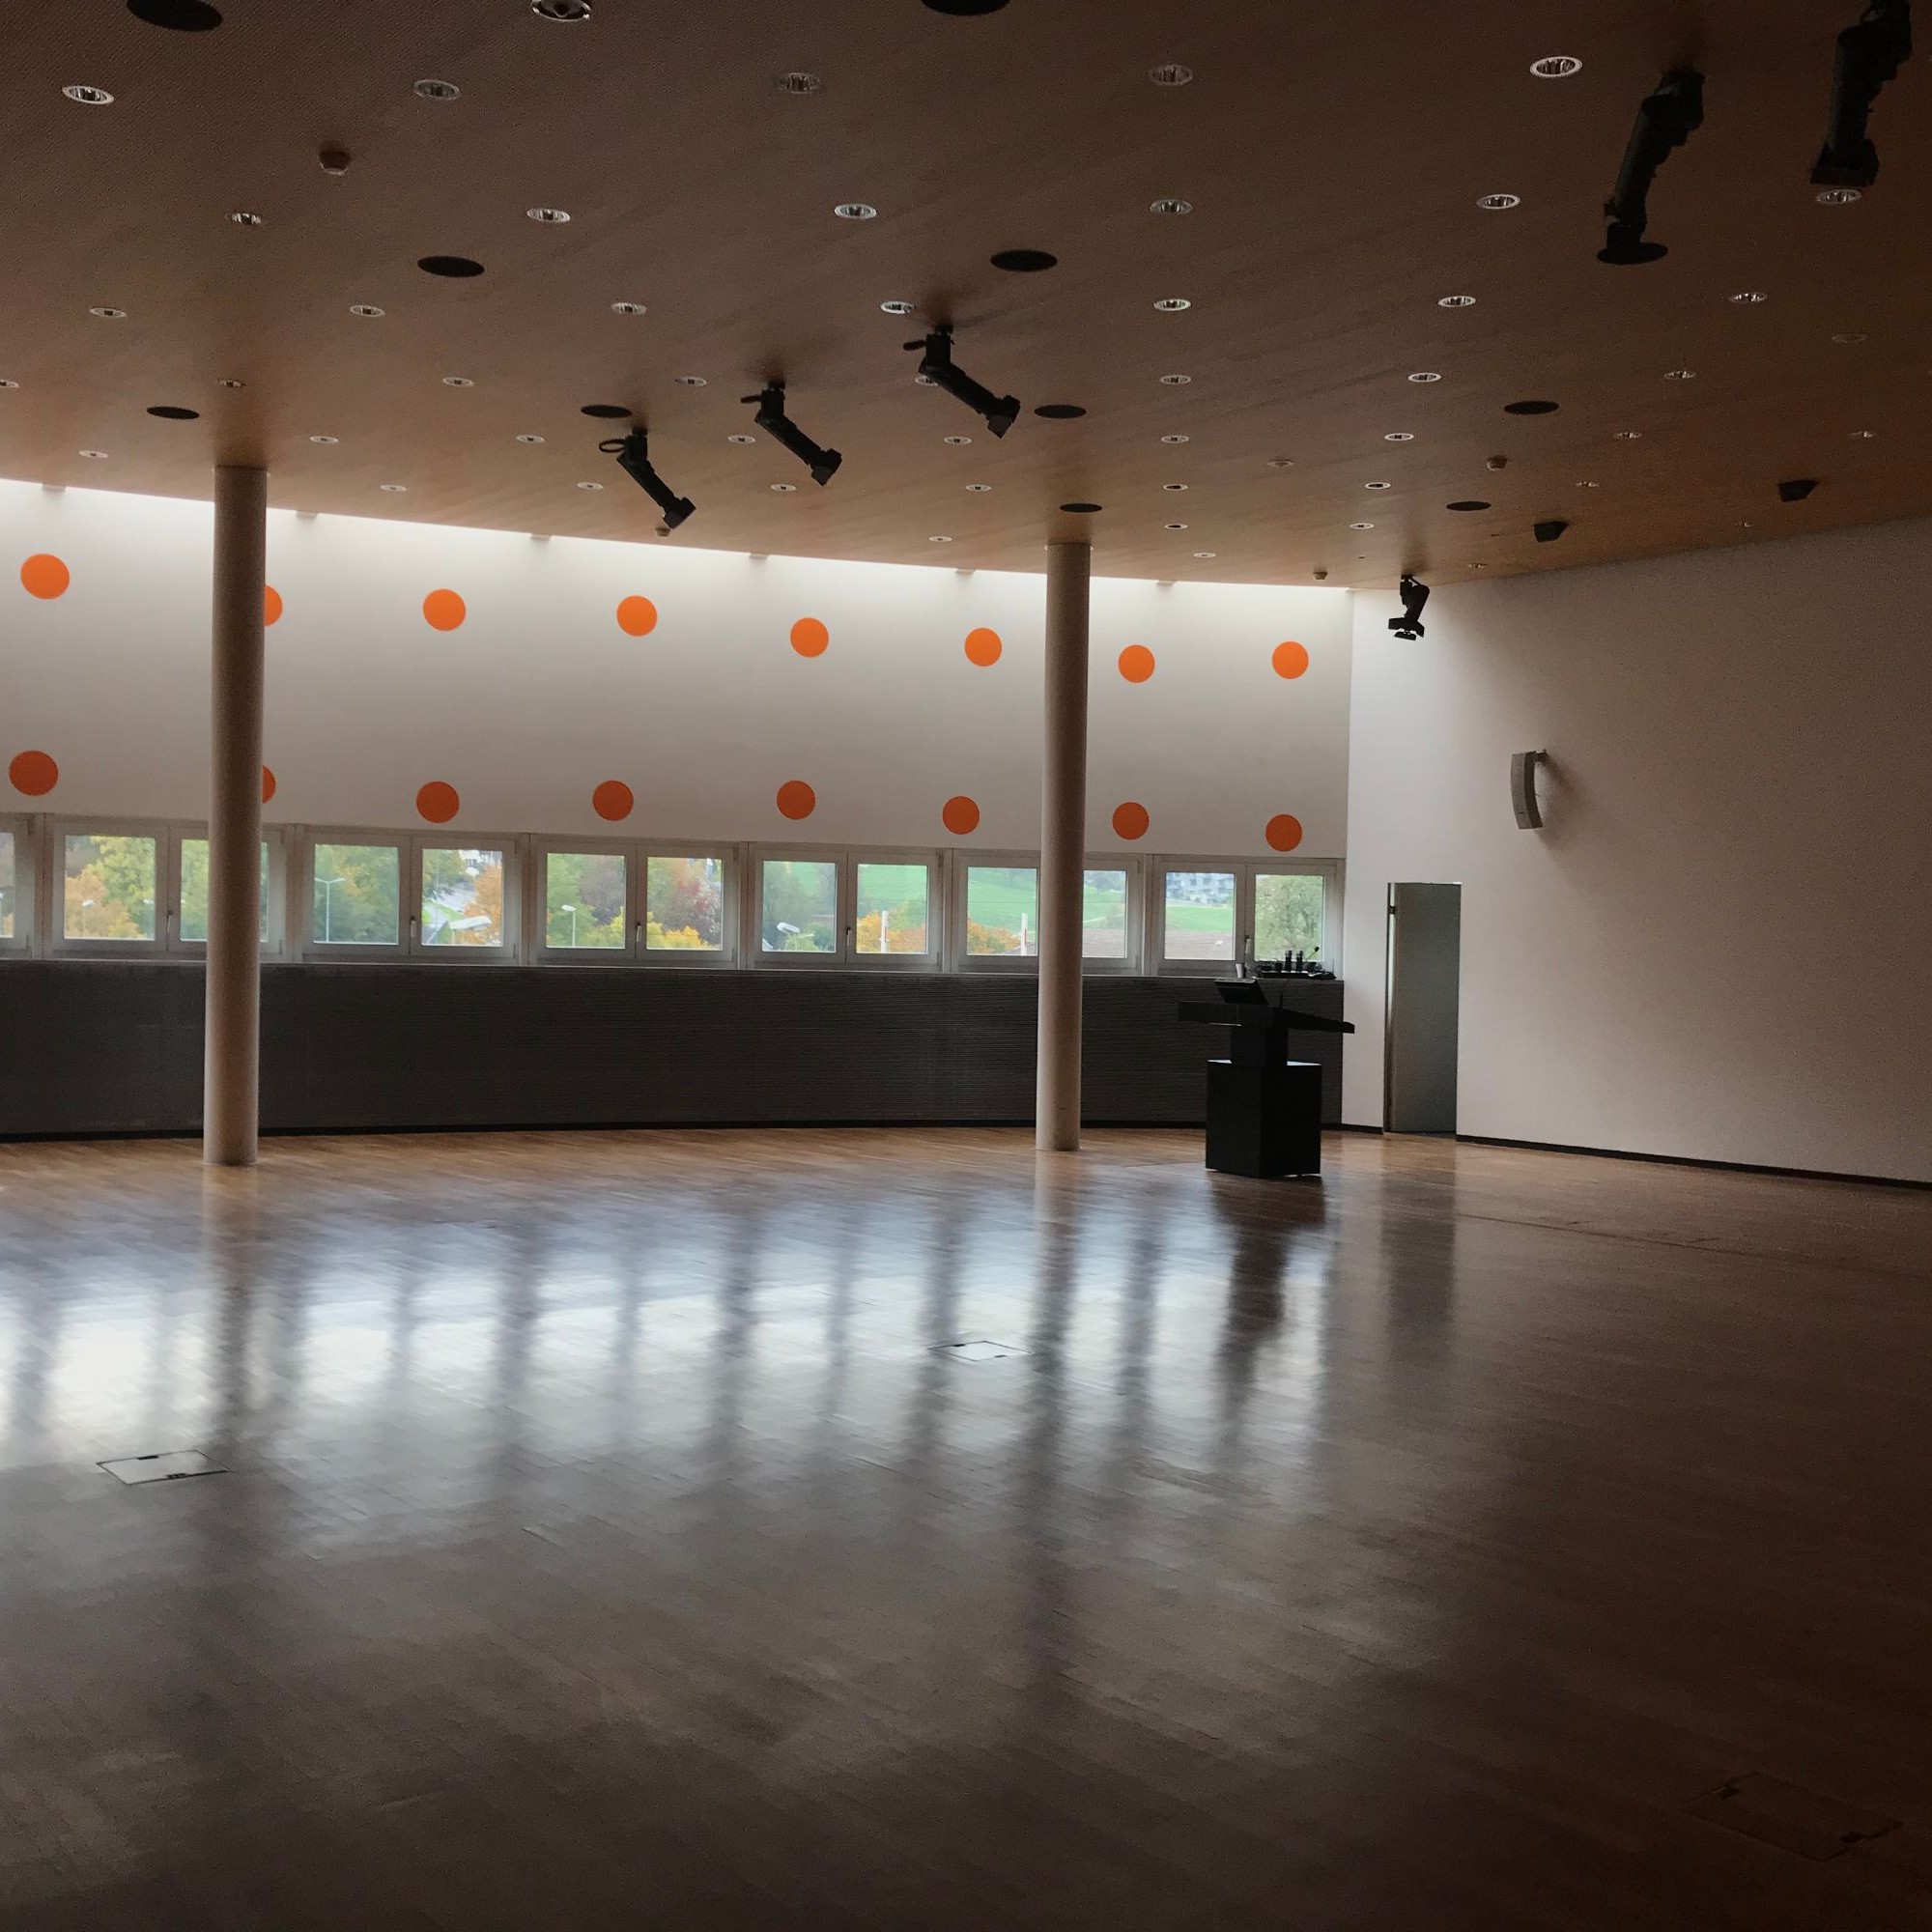 Obwohl die Fenster klein sind, lassen die orangen Punkte und der helle Boden den Konforenzsaal erleuchten.